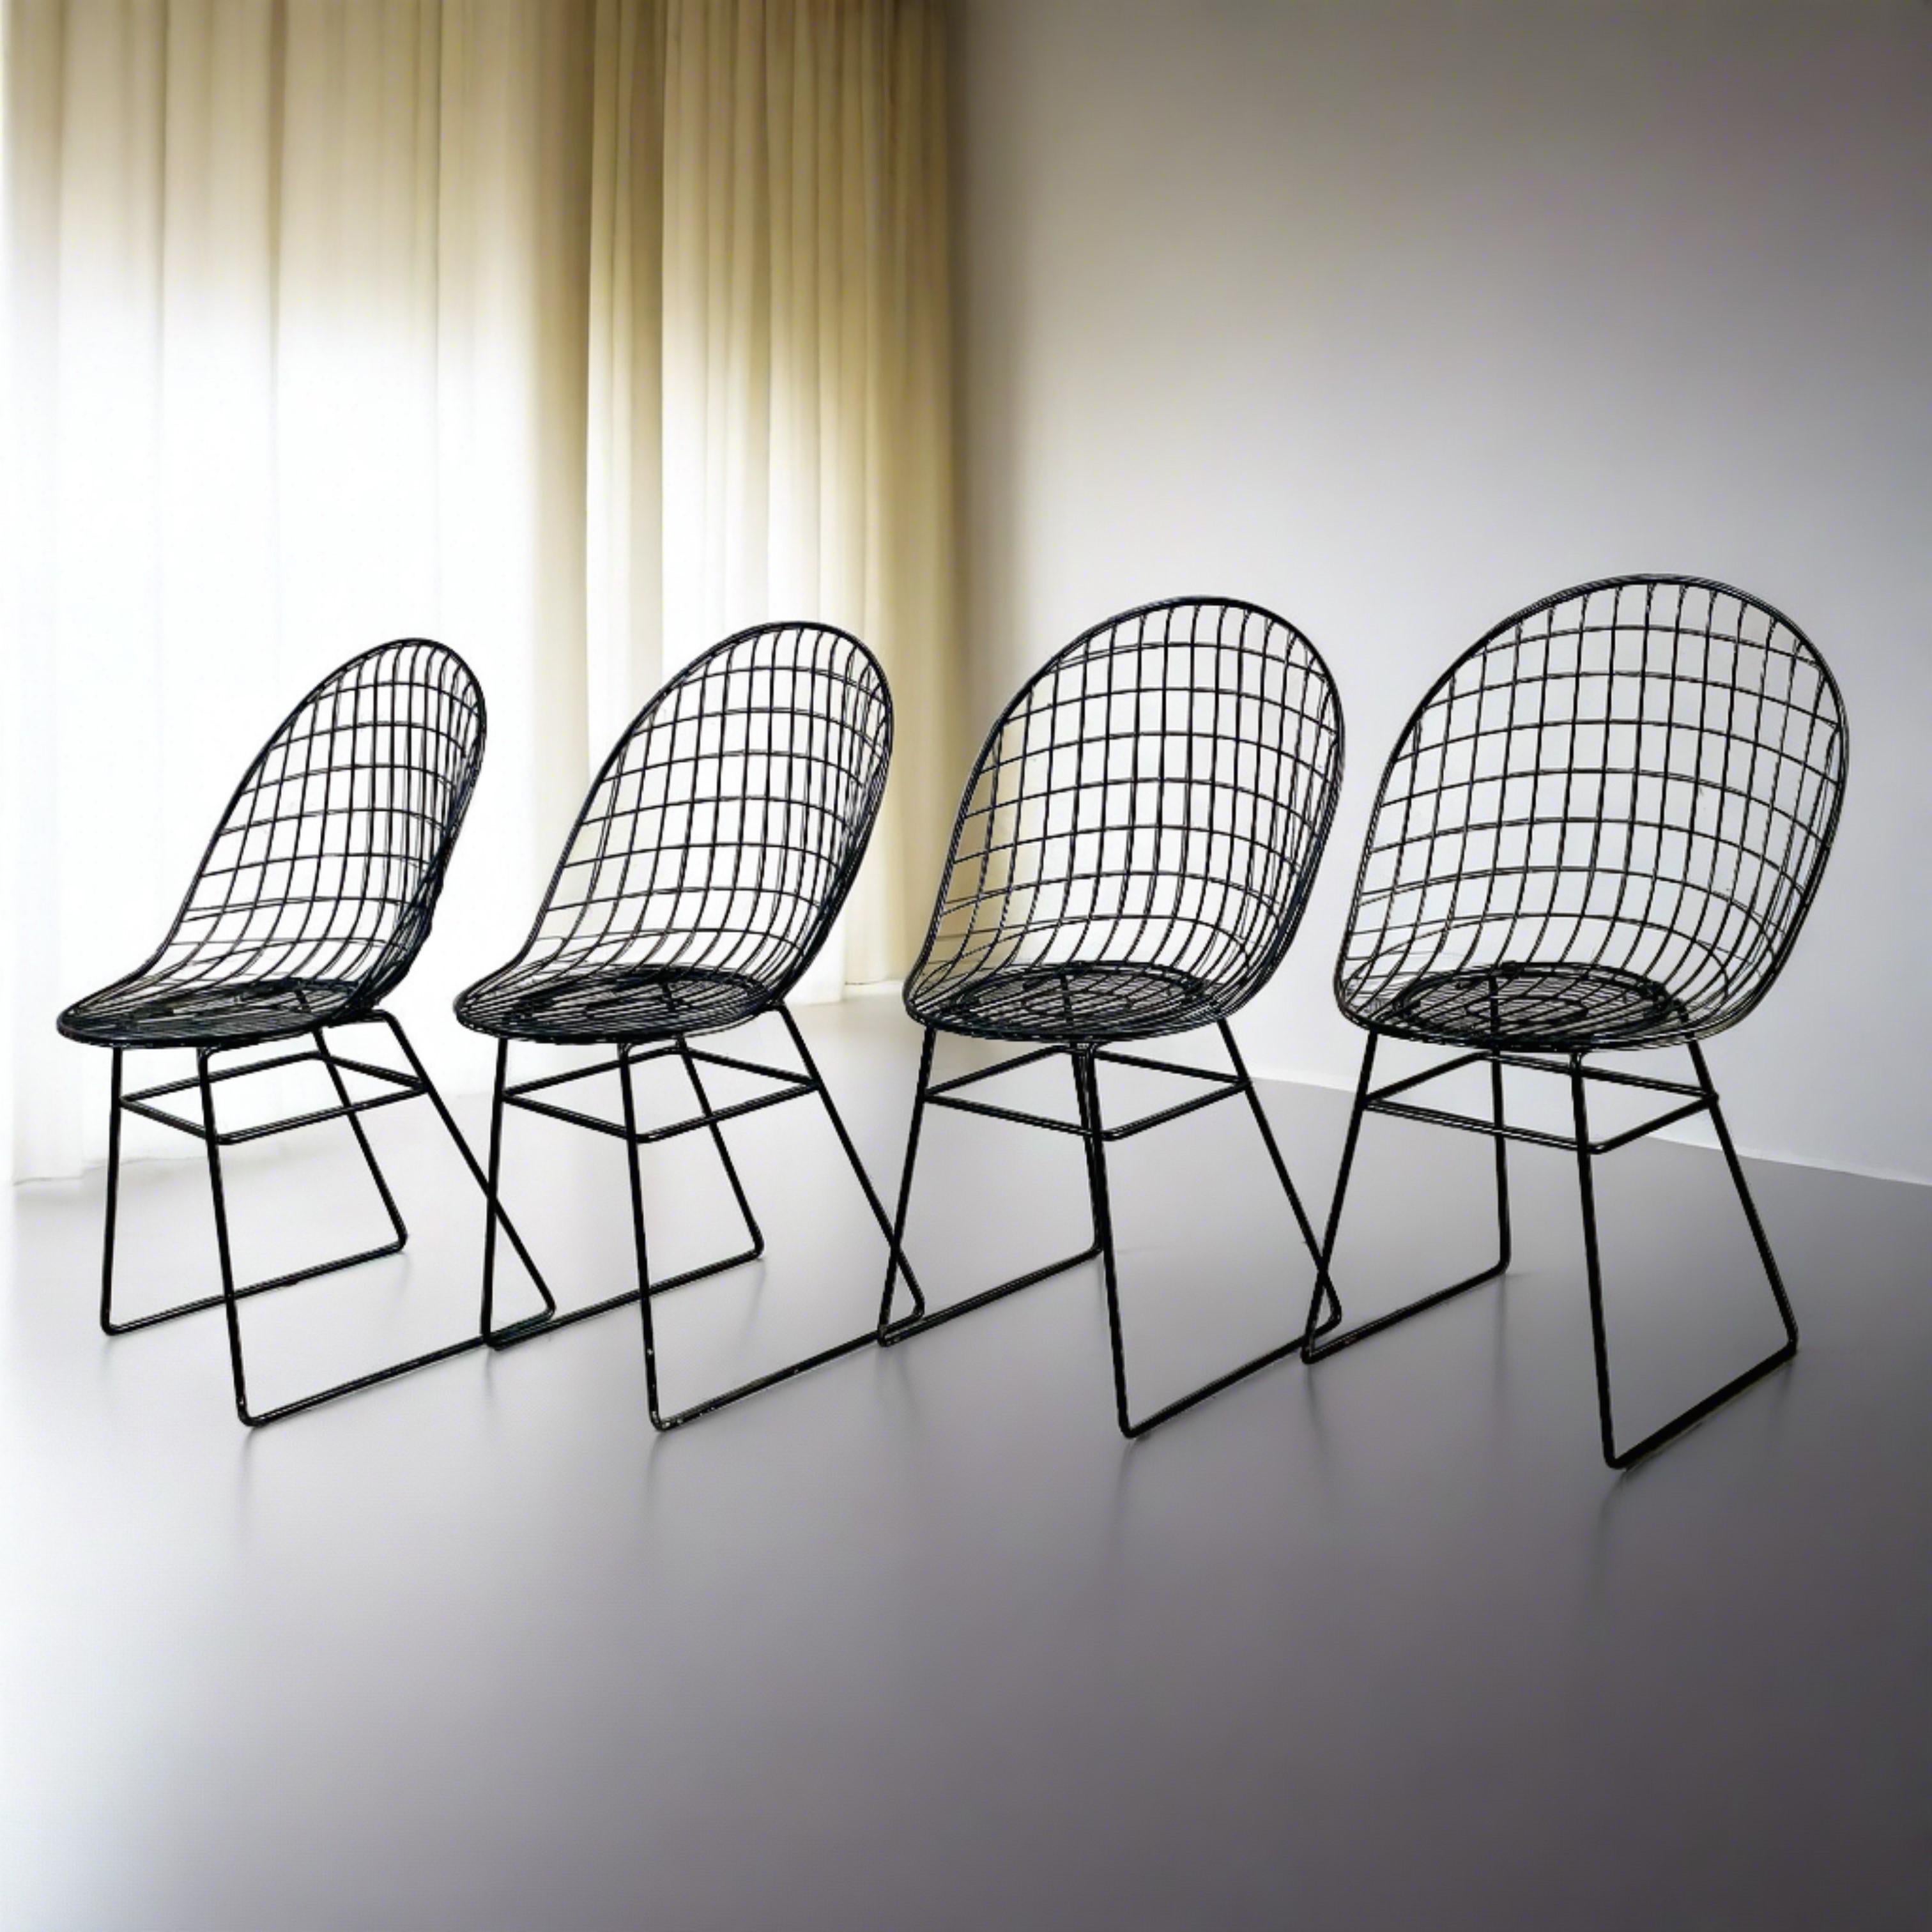 Möchten Sie Ihrem Esszimmer einen Hauch von Eleganz aus der Mitte des Jahrhunderts verleihen? Dieses exquisite Set von 4 Wire-Stühlen aus den 1950er Jahren, die von den renommierten Designern Cees Braakman und A. Dekker für UMS Pastoe entworfen